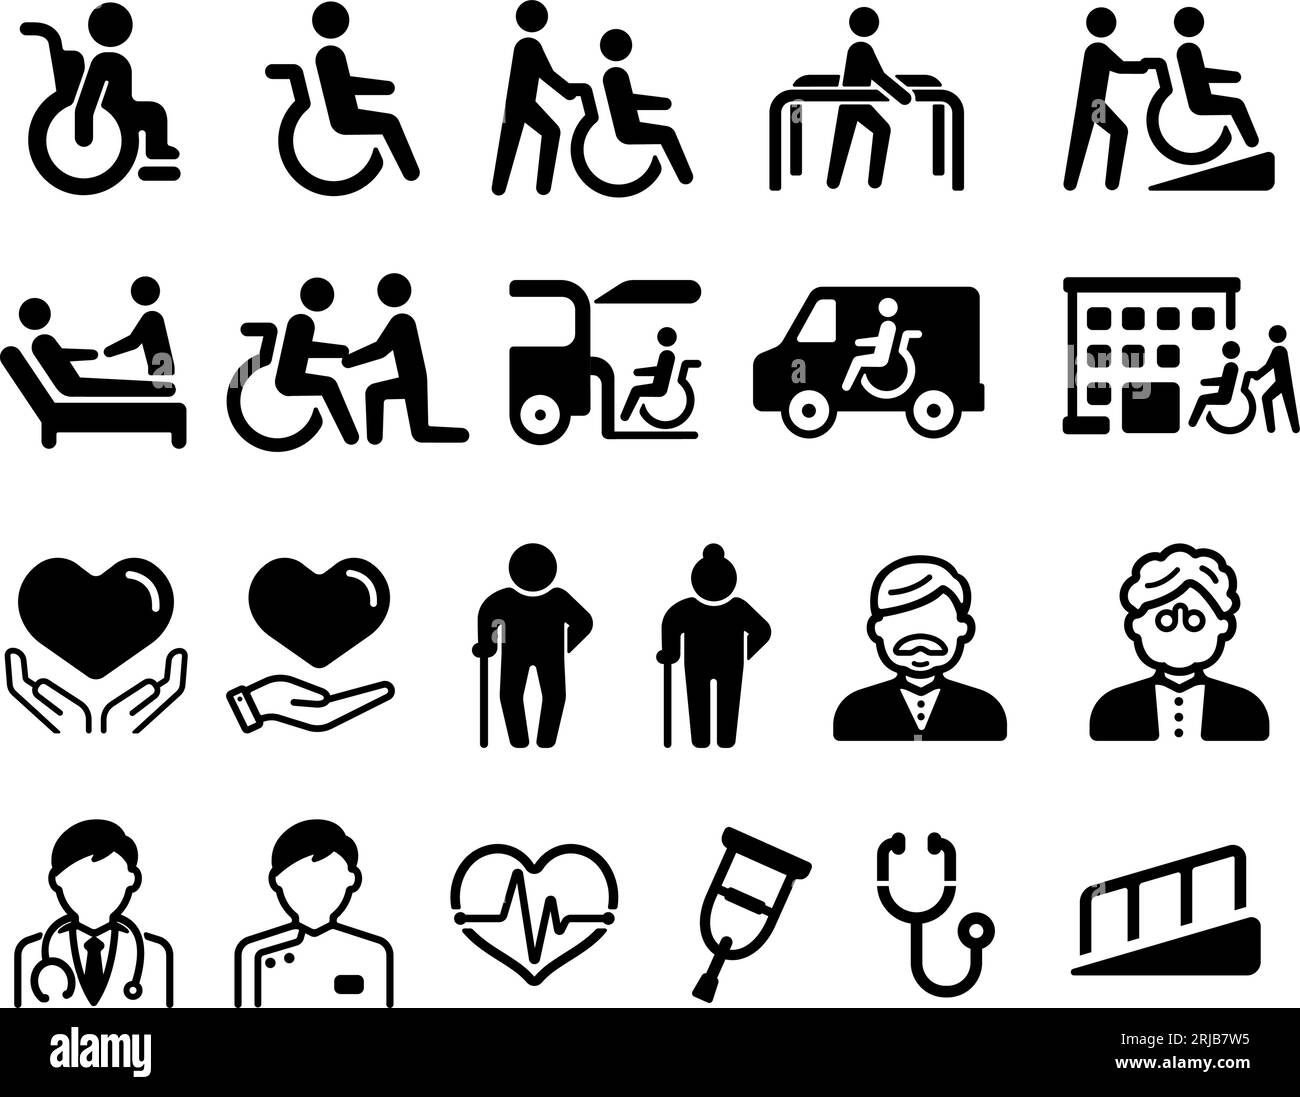 Illustrazioni di icone vettoriali relative al benessere degli anziani, delle persone con disabilità, ecc. Illustrazione Vettoriale